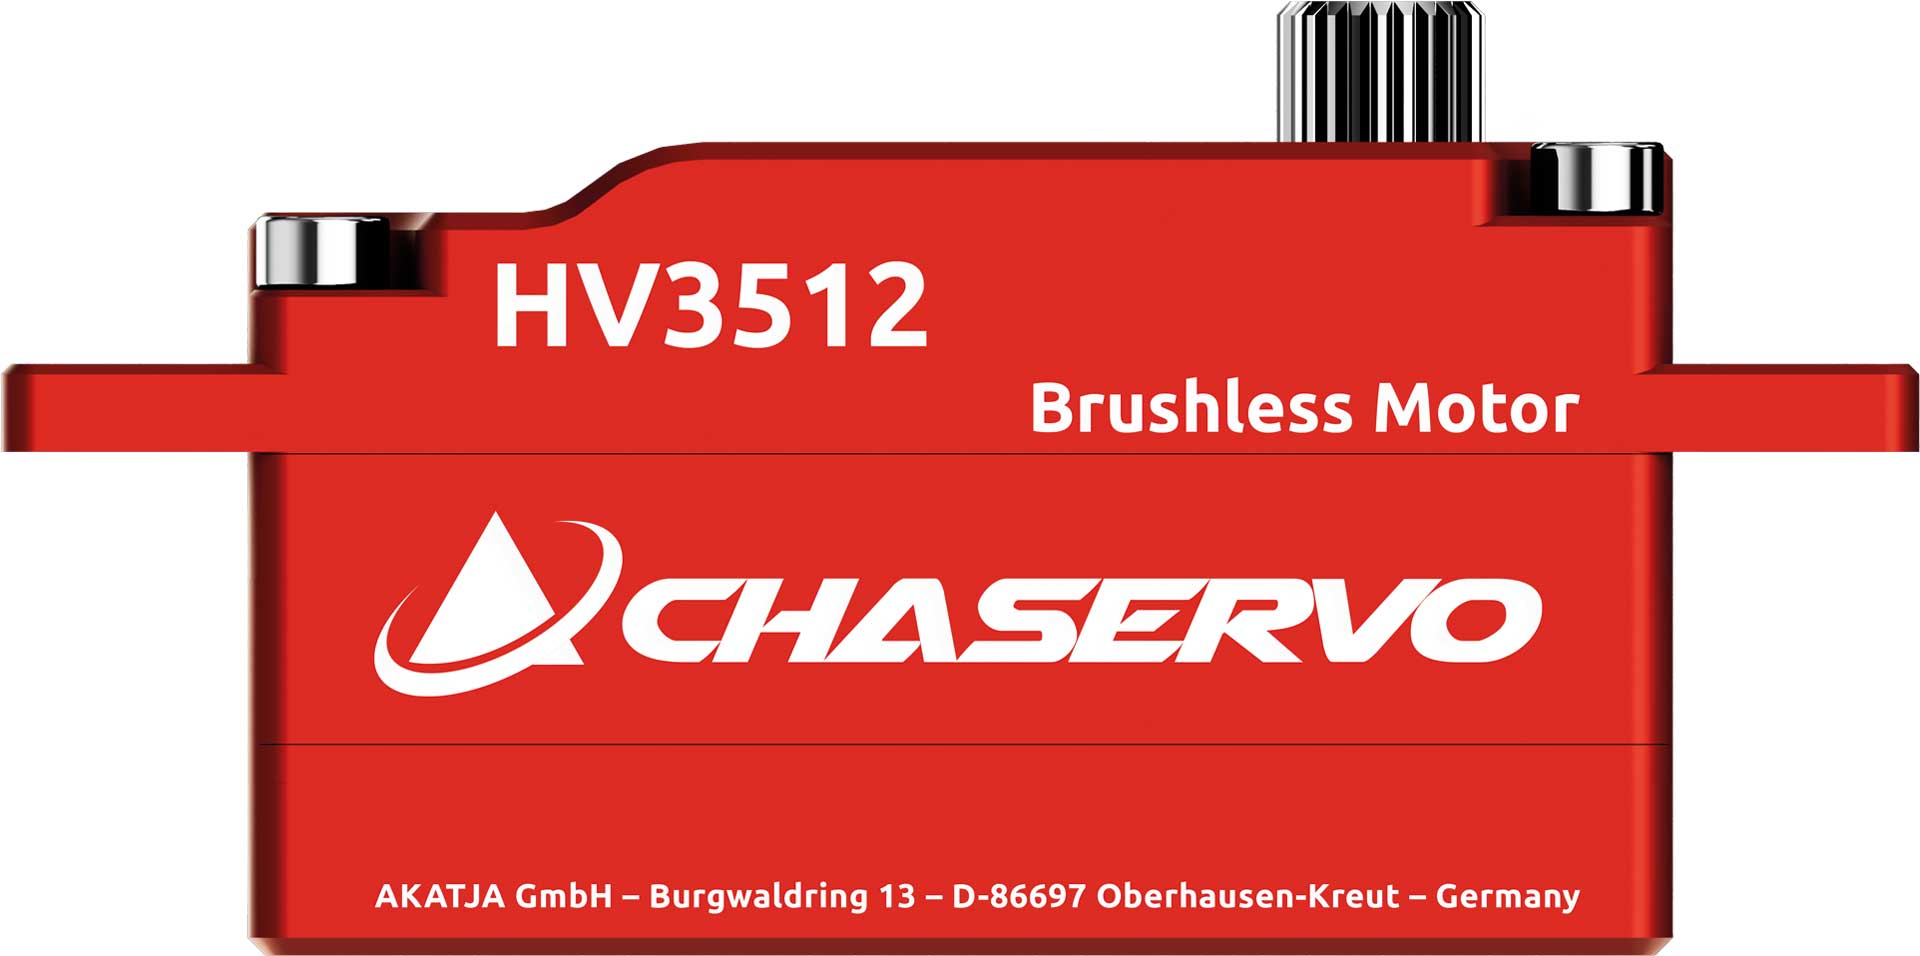 CHASERVO HV3512 25T low profile HV Brushless Servo, montage vertical